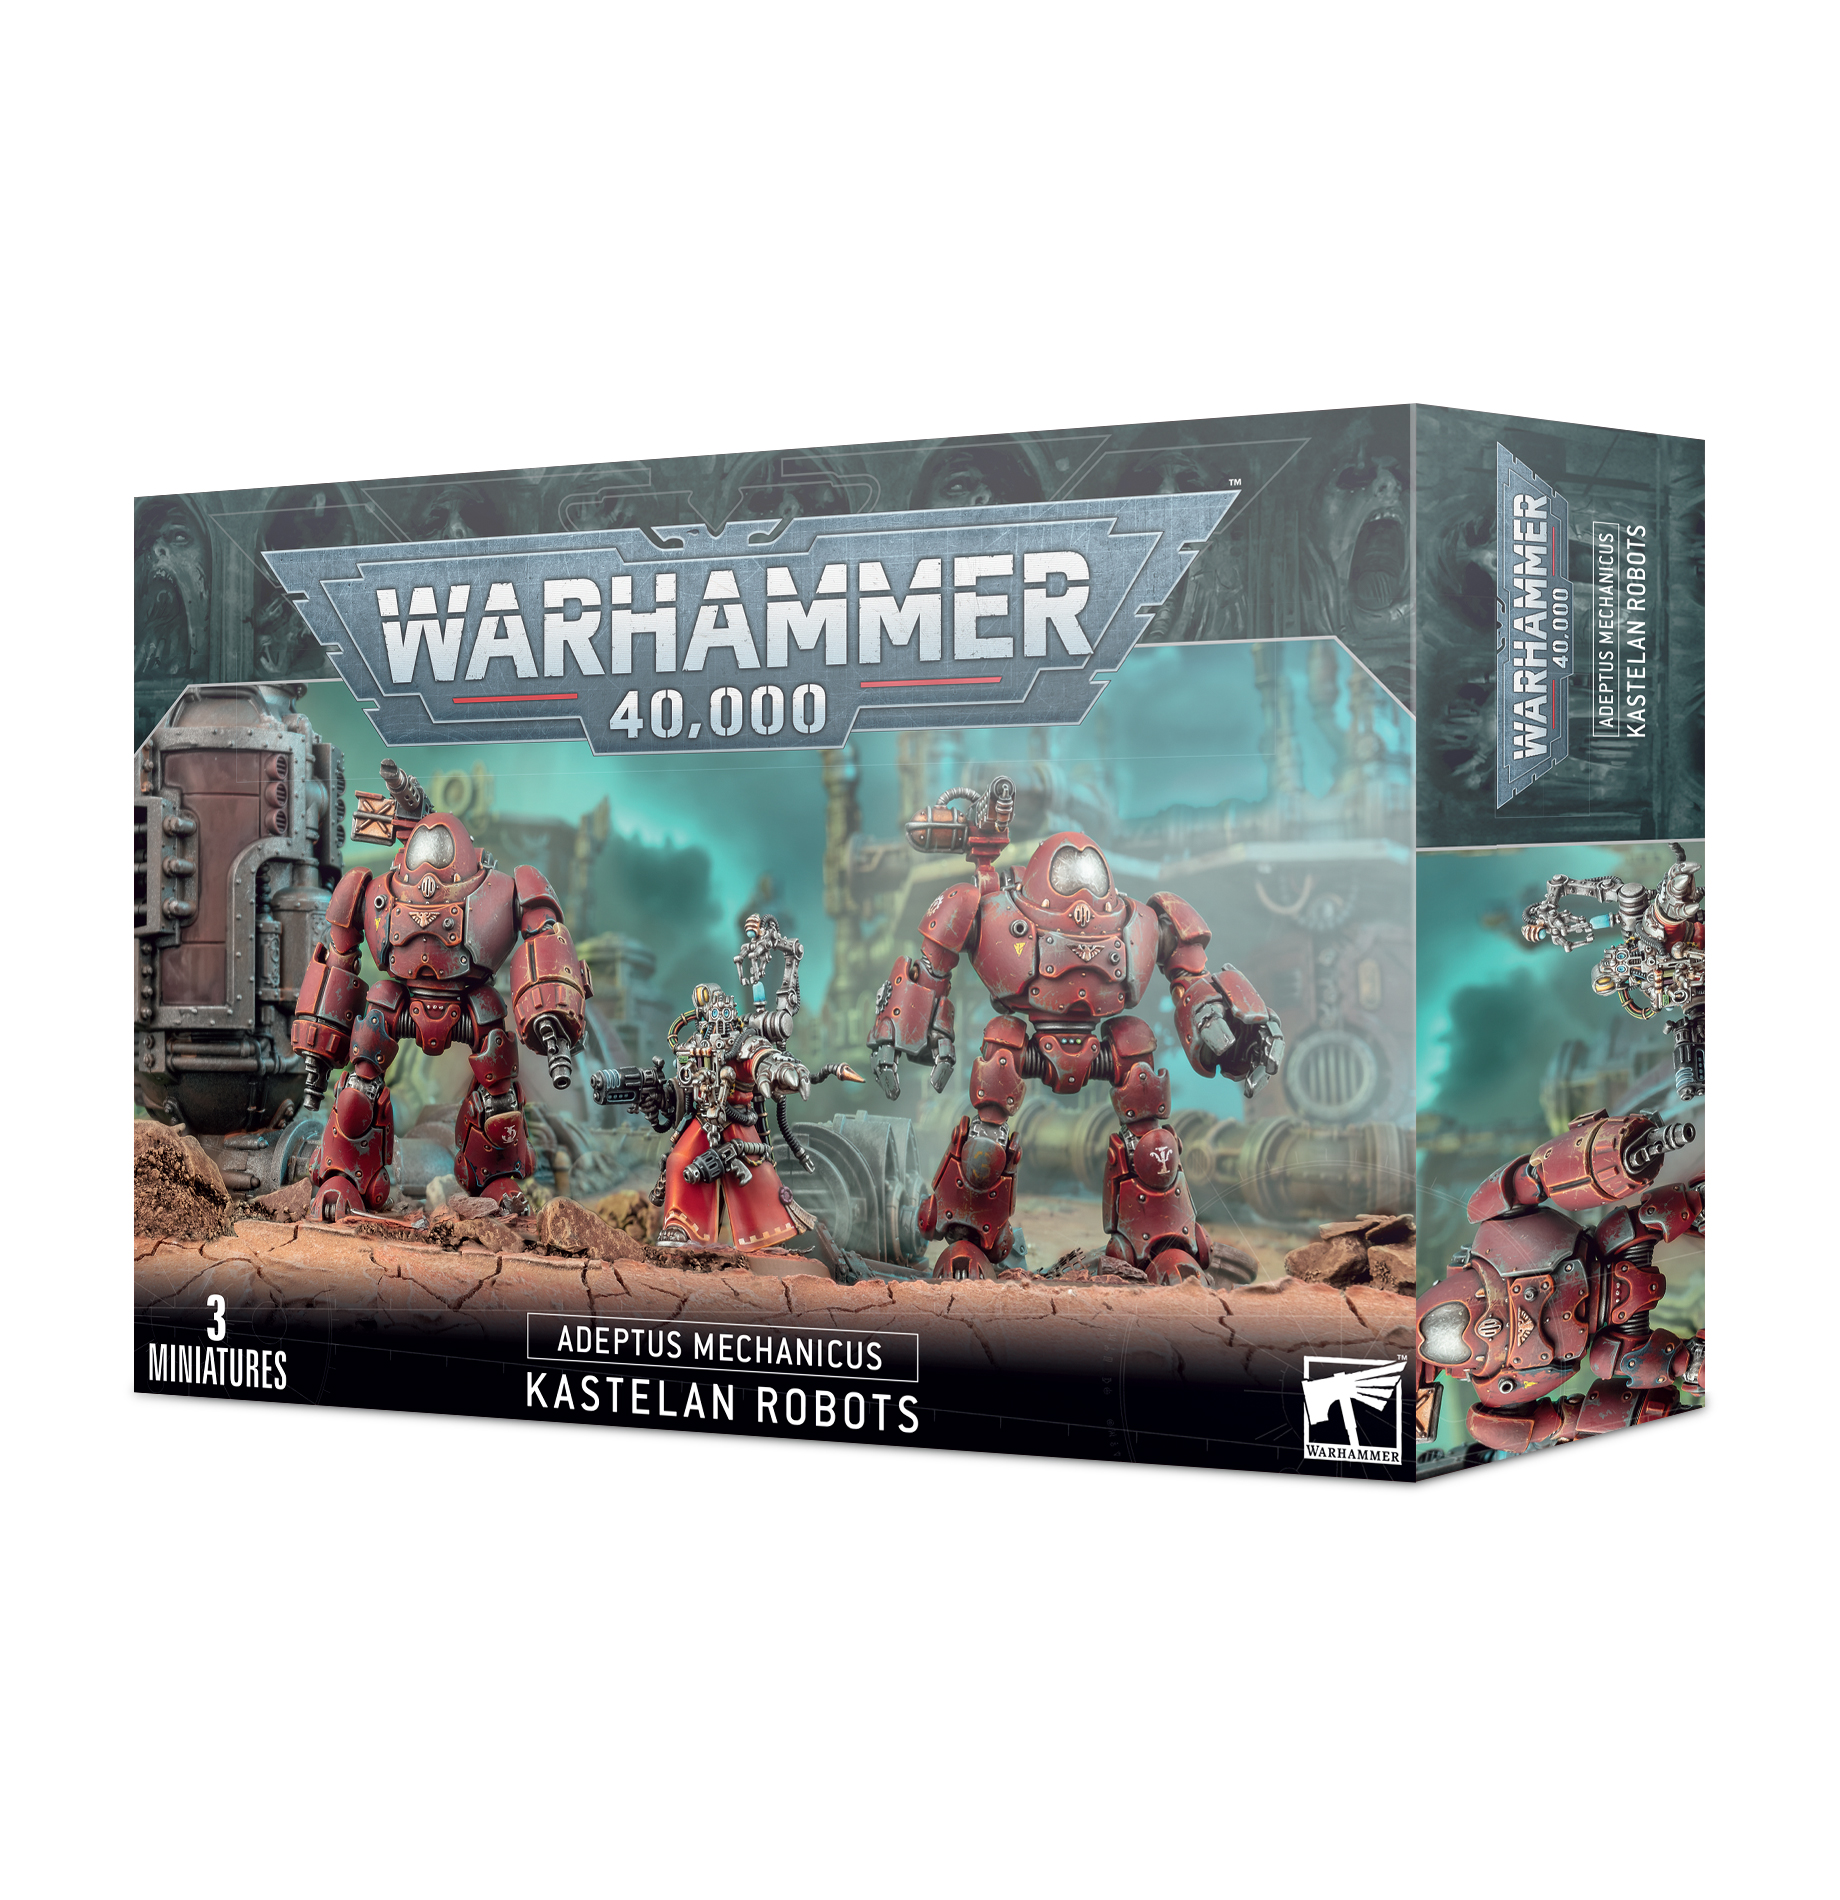 Warhammer 40,000: Adeptus Mechanicus: Kastelan Robots 